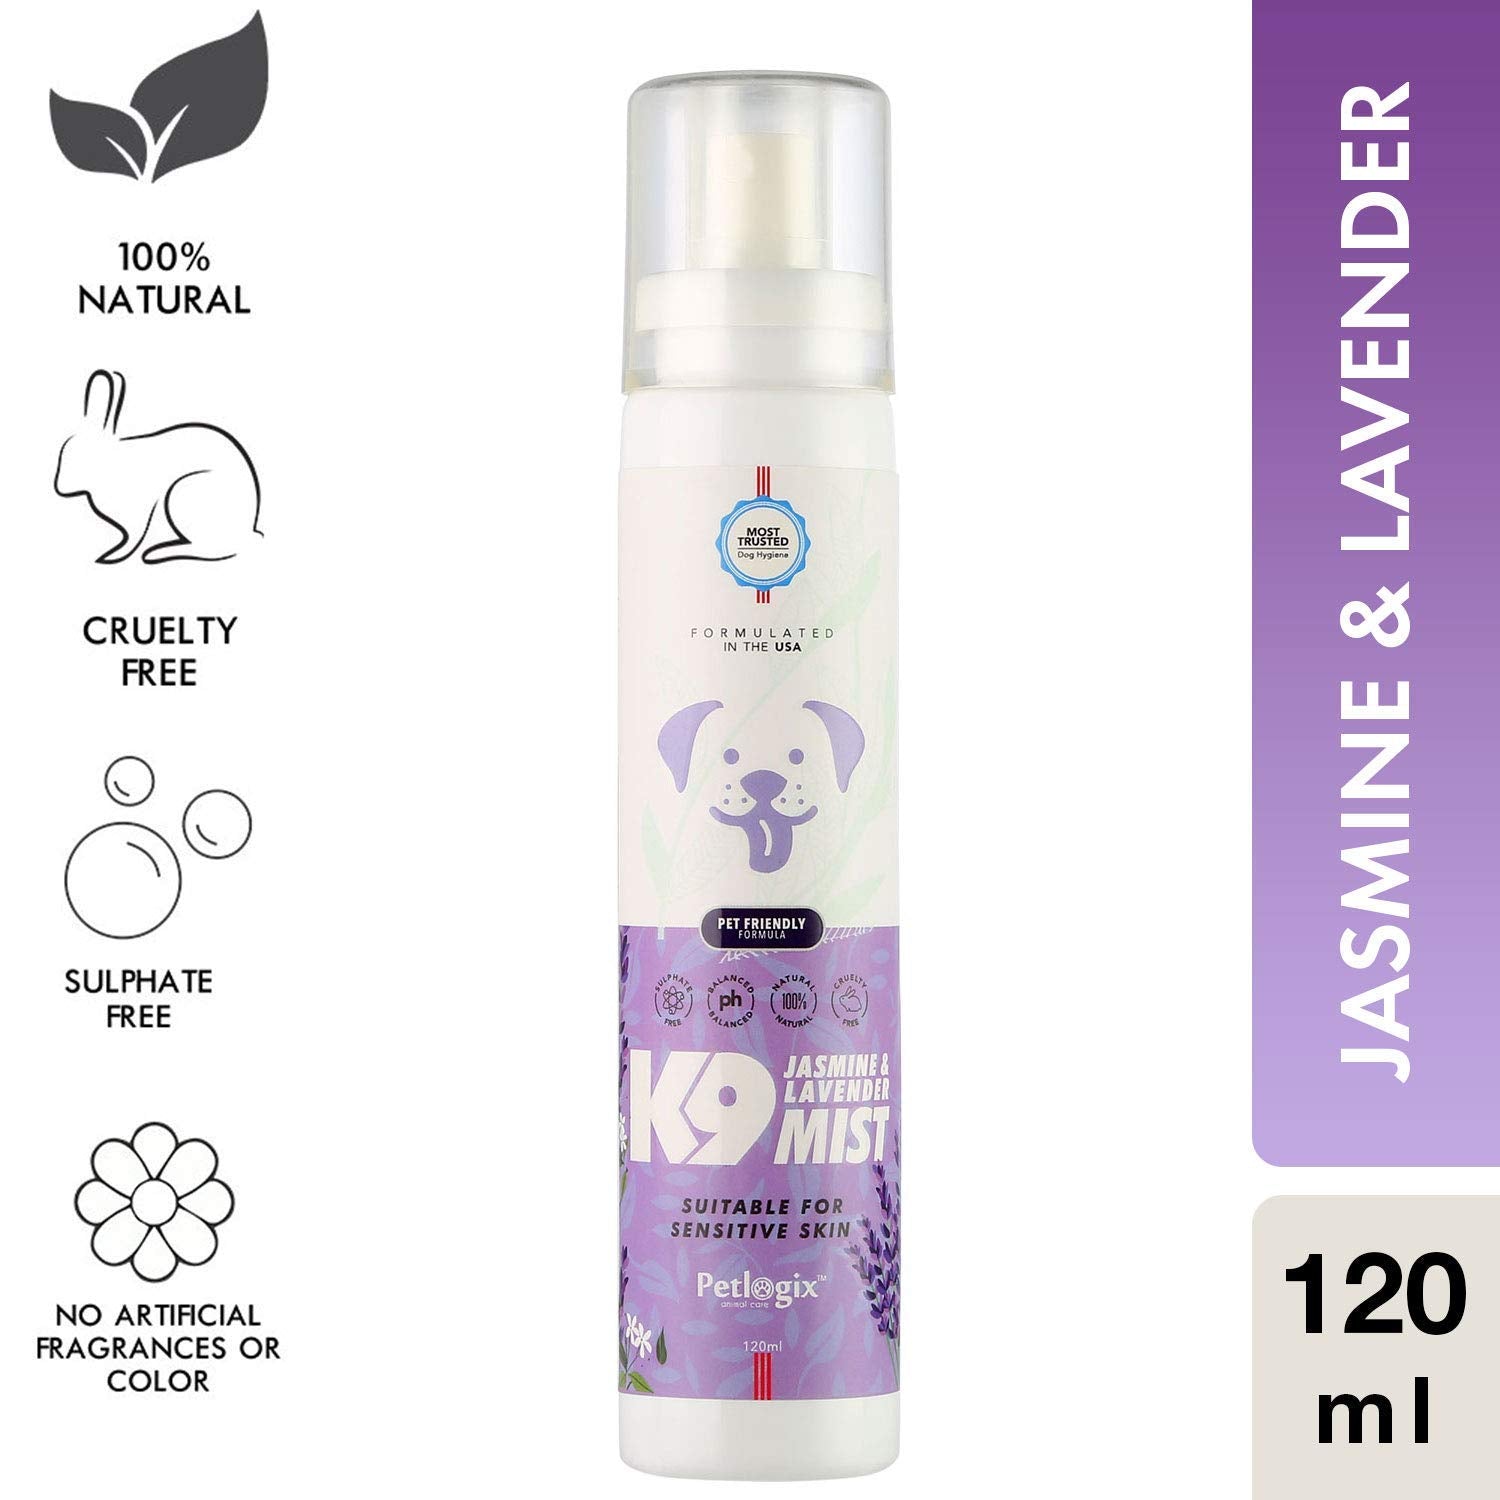 Jasmine & Lavender K9 Mist( Odour Control Spray for Sensitive Coat)